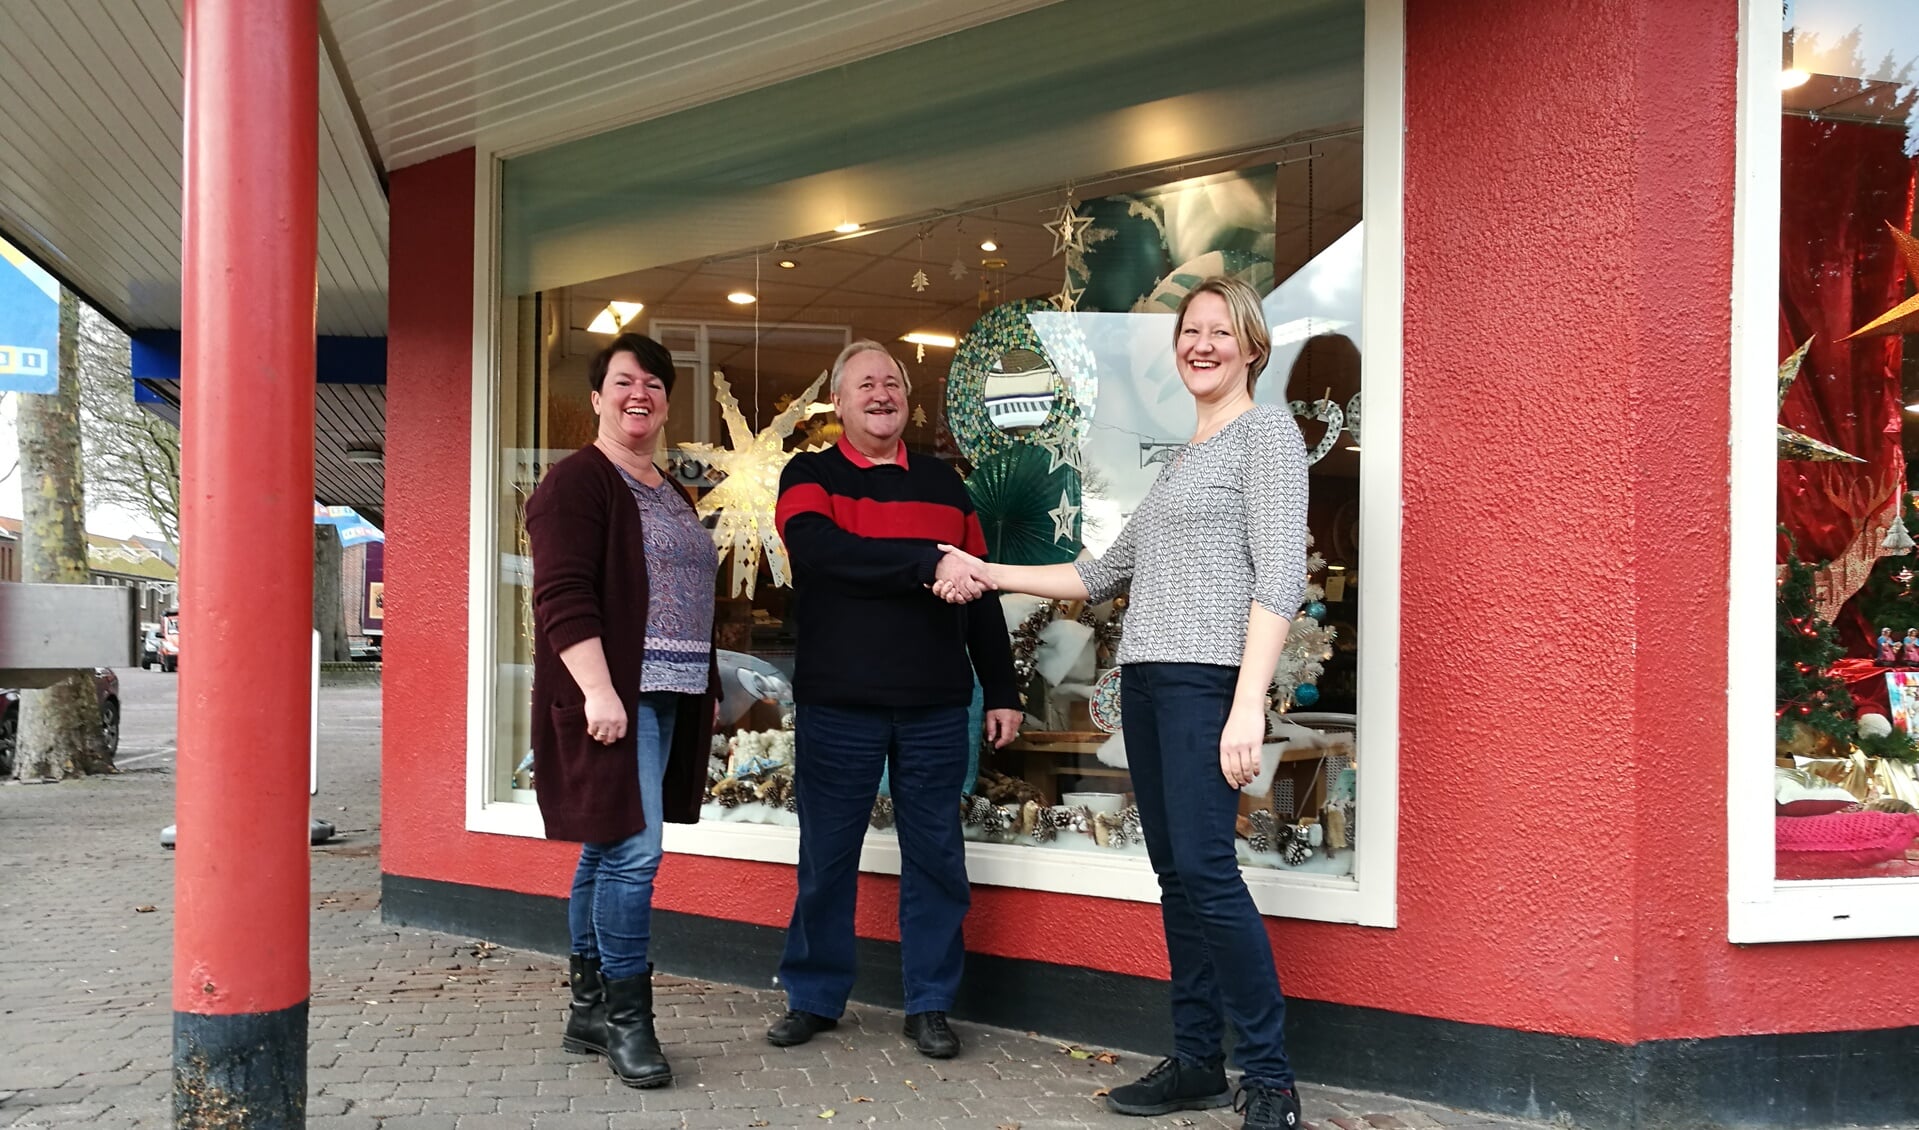 Lotte van de Belt van Den Burg winkelhart van Texel, feliciteert Hans Leushuis en Evalien Smit. (Foto: Job Schepers)